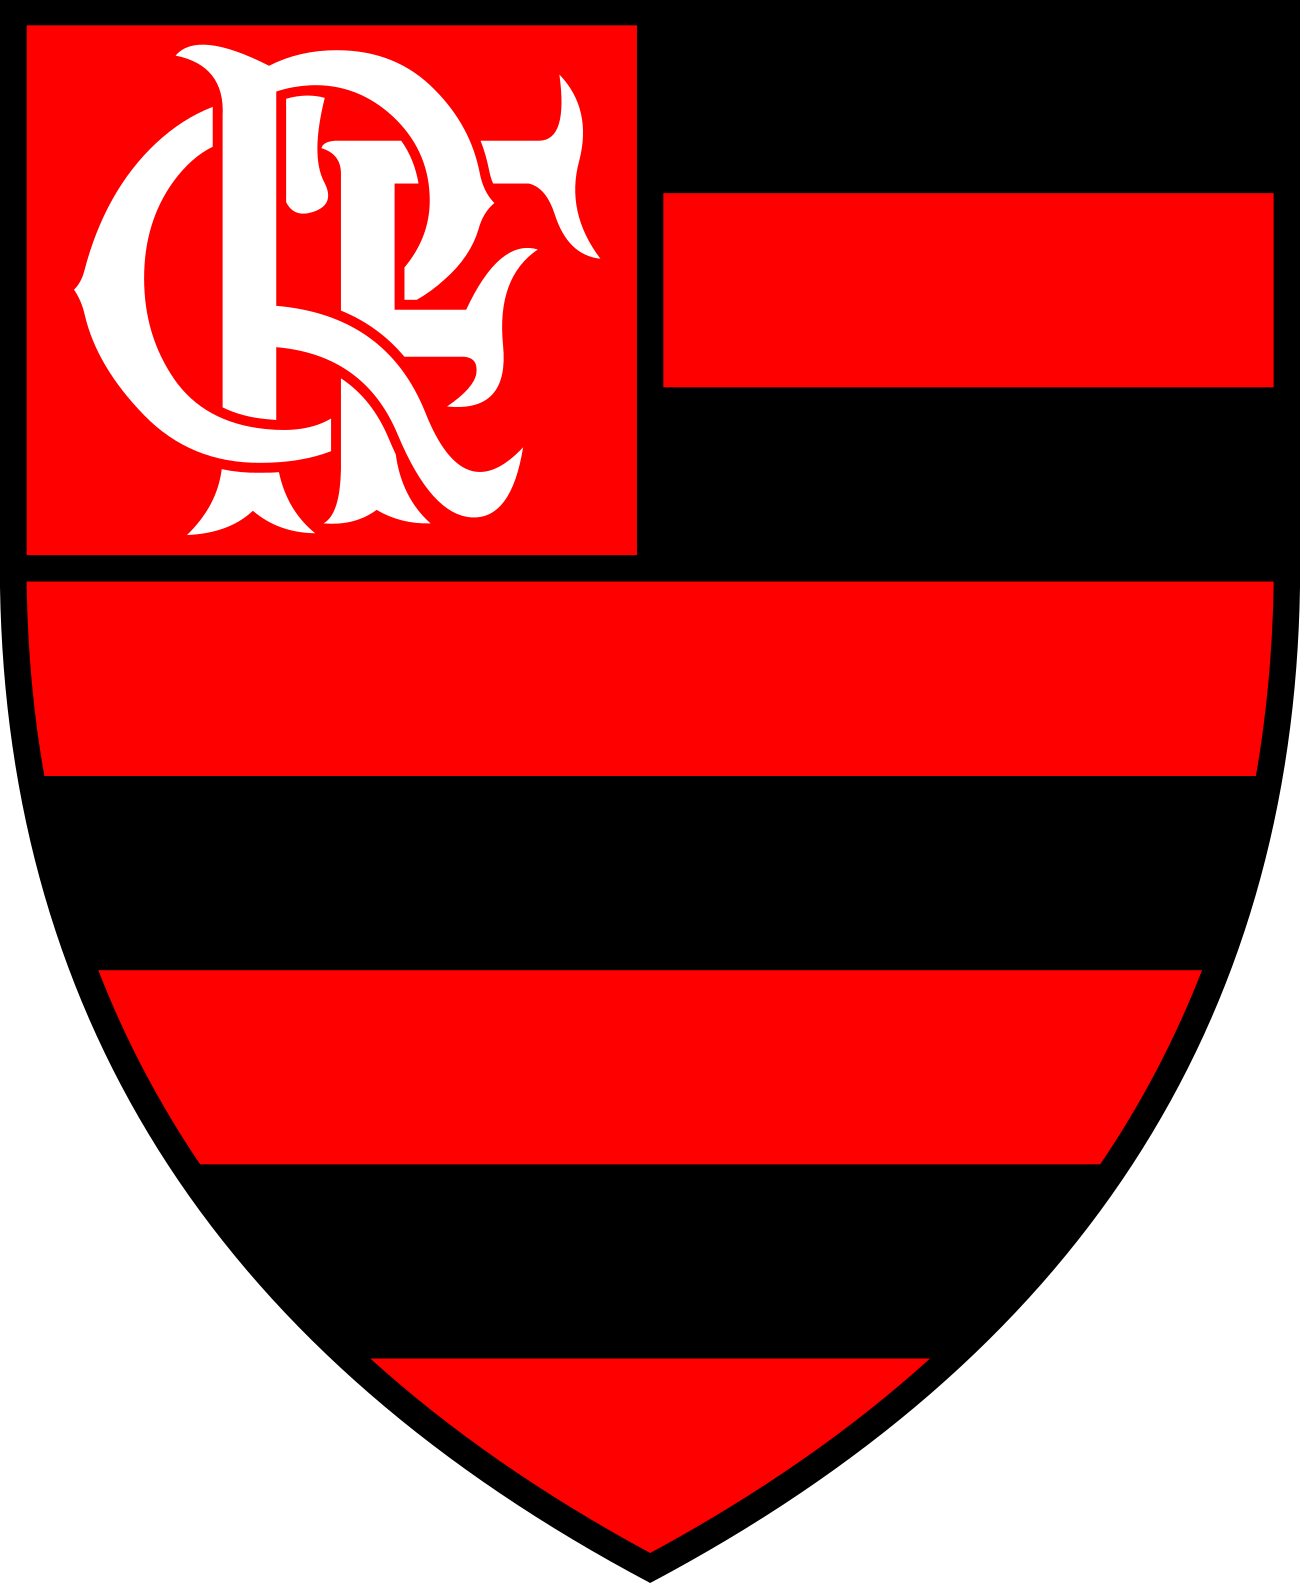 Escudo do Flamengo – Clube de Regatas do Flamengo - PNG Transparent - Image PNG